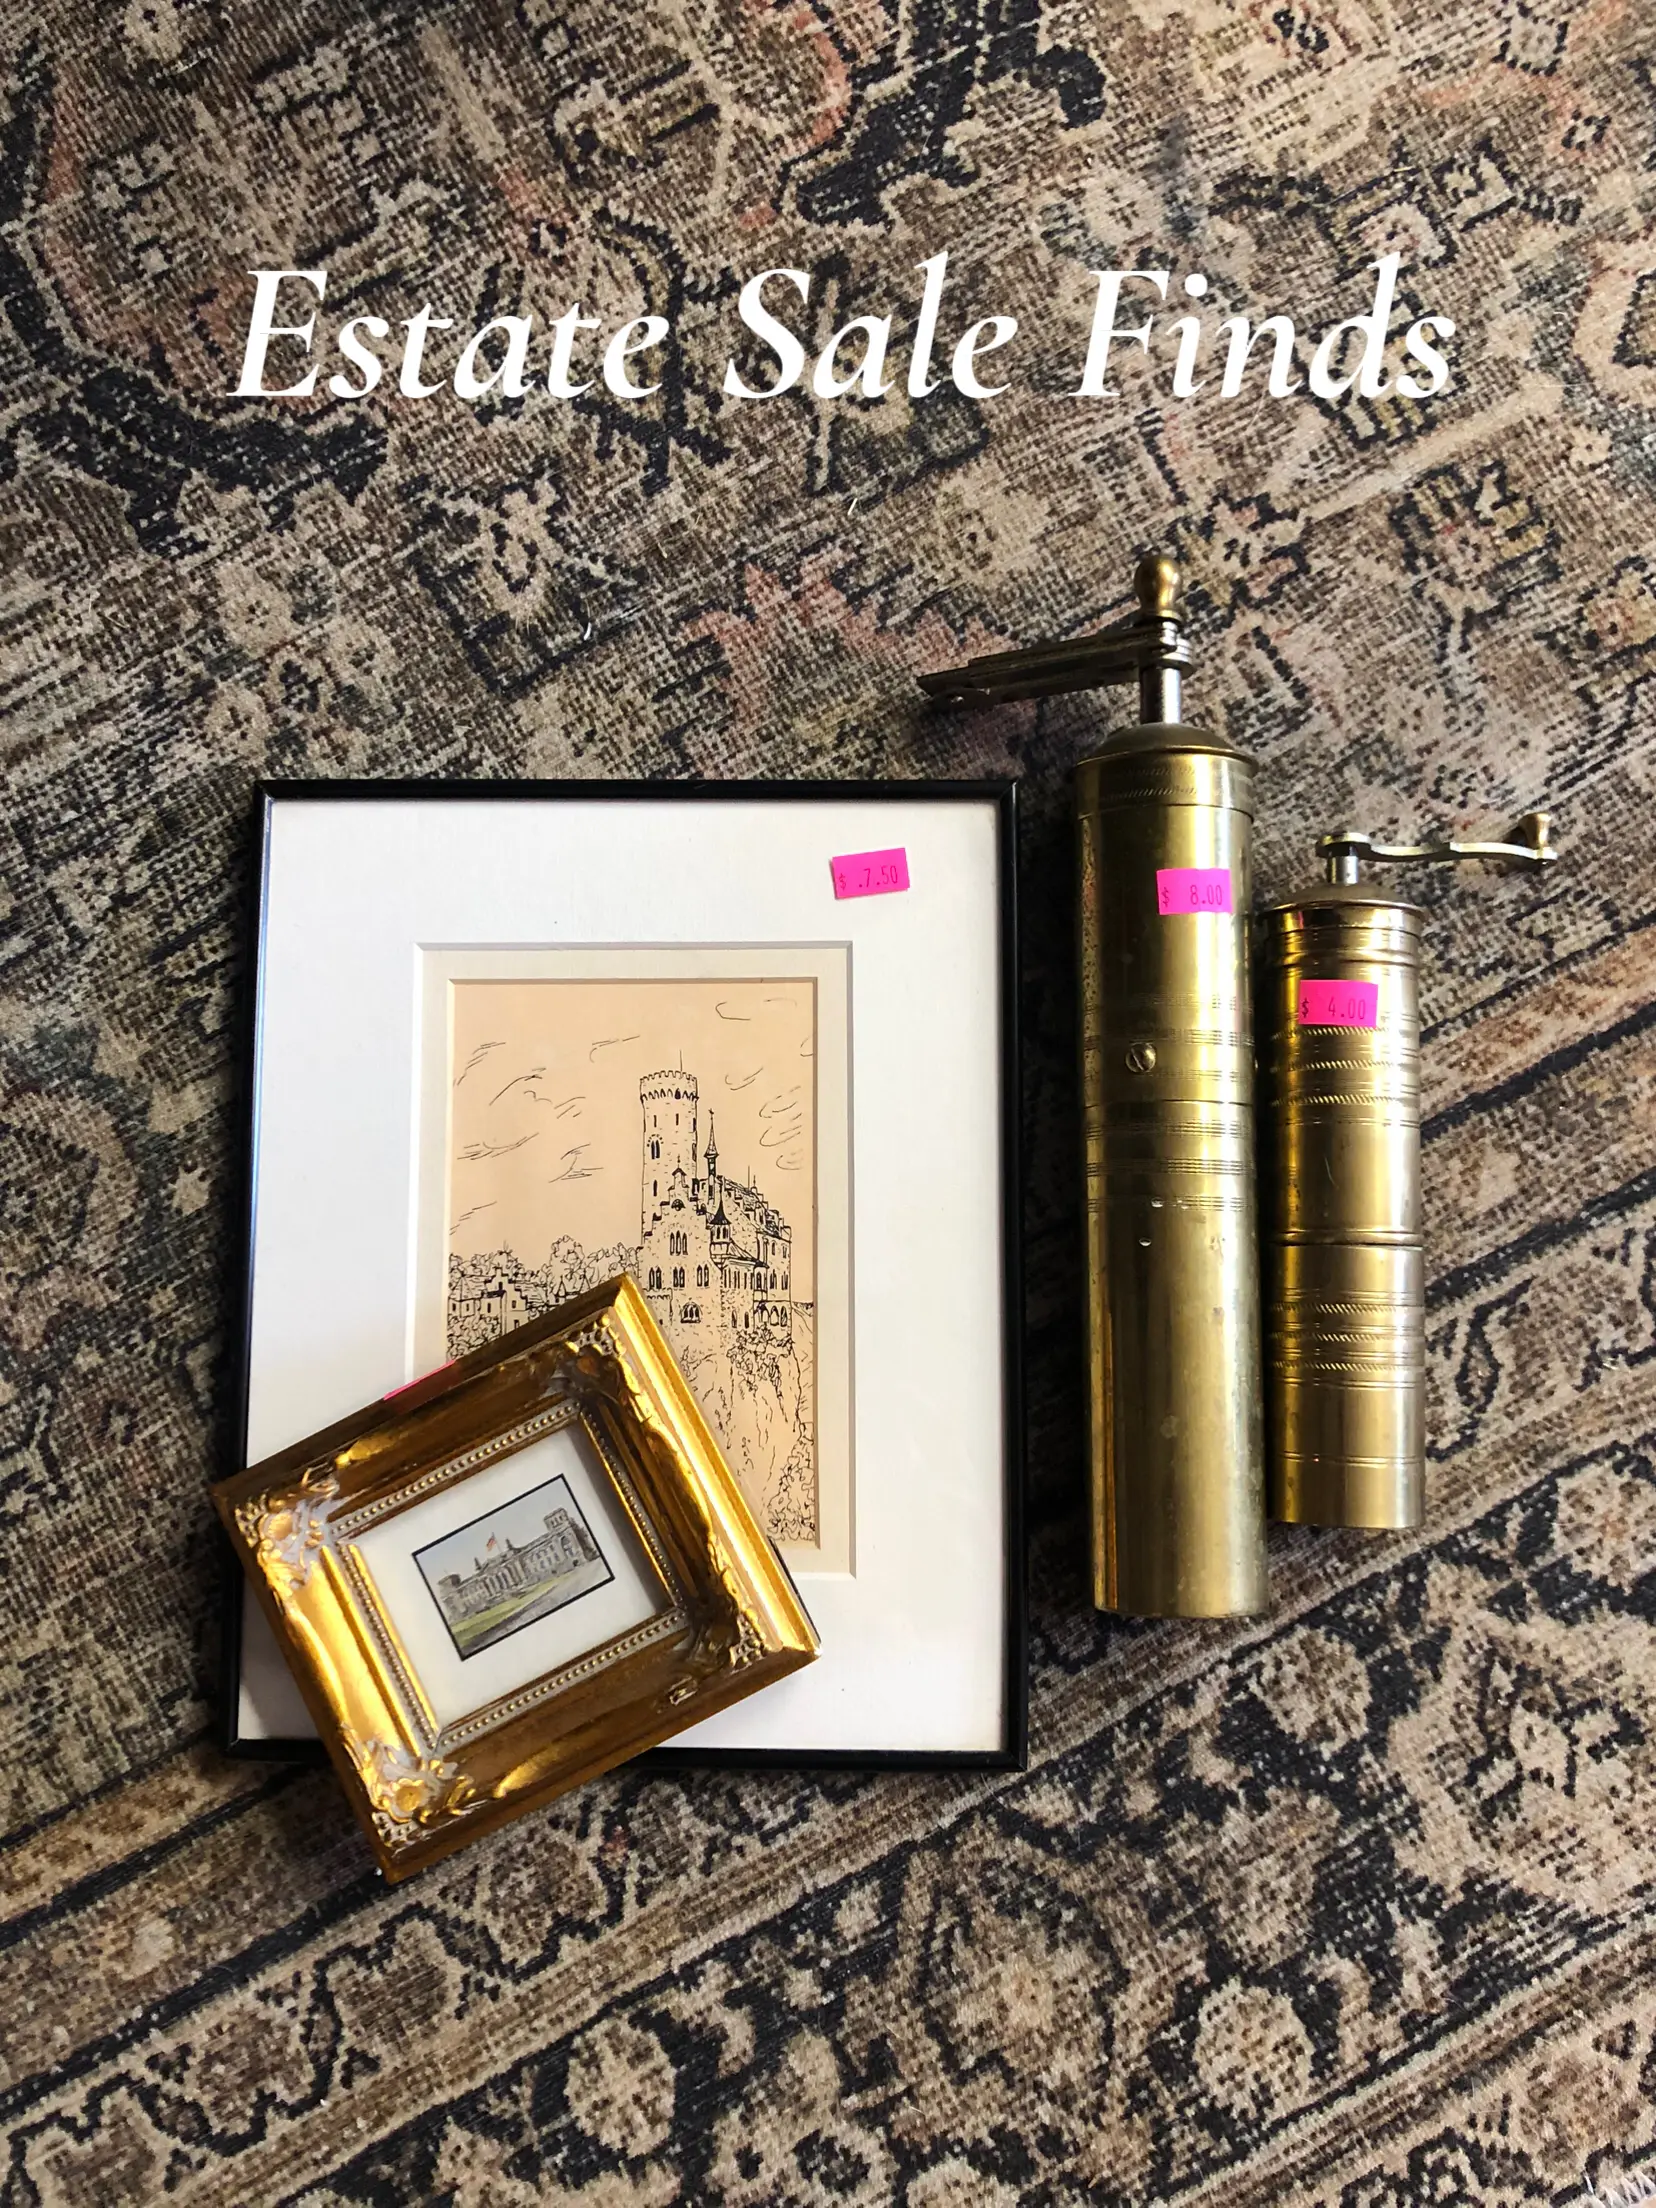 Estate sale find: vintage lipstick holder! #estatesalefinds